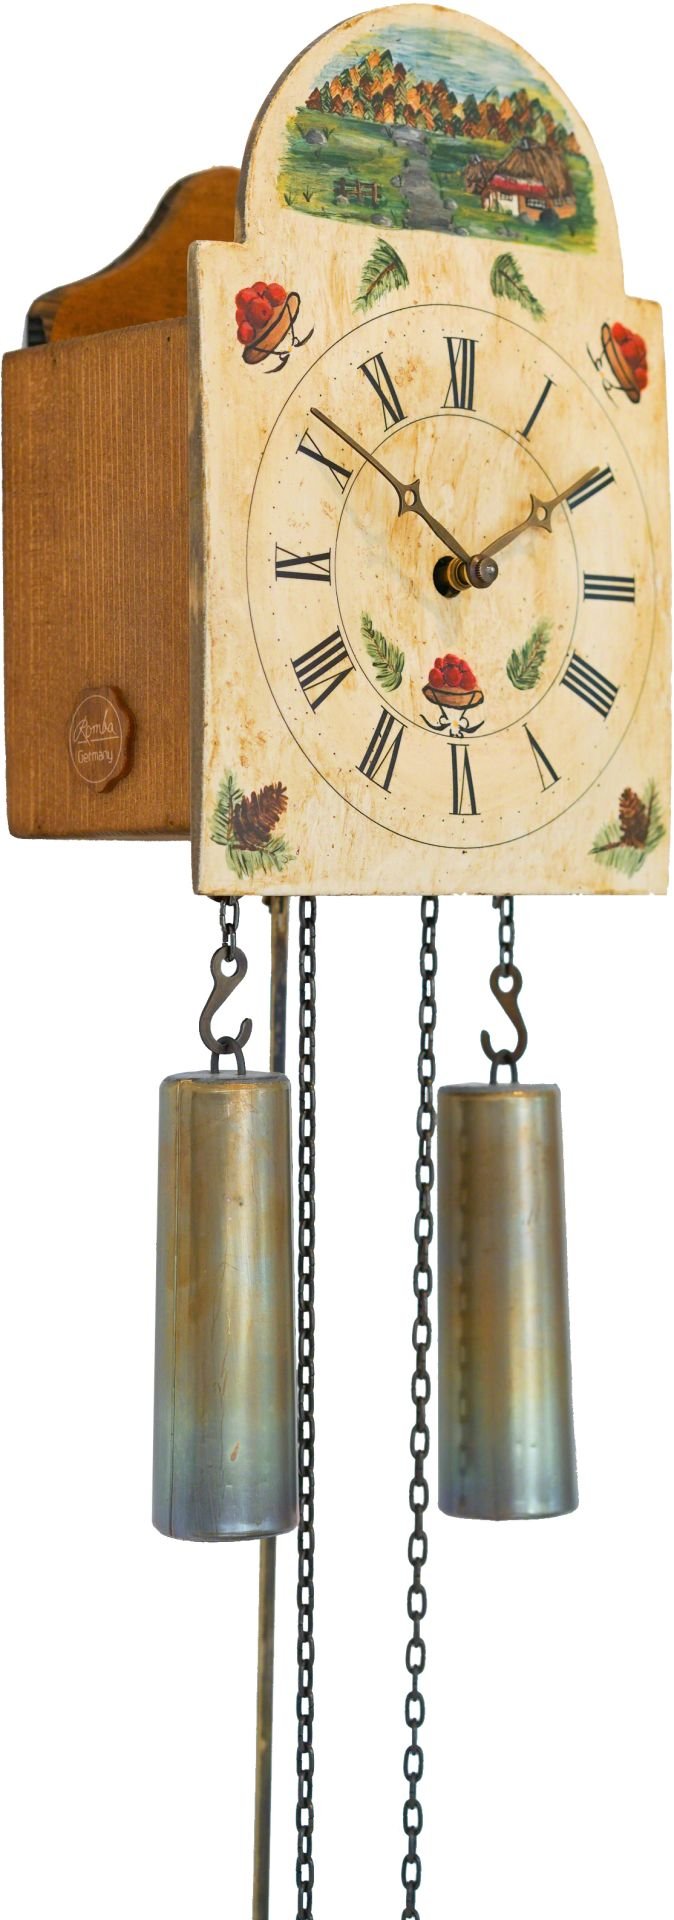 Reloj de cuco con fachada pintada movimiento mecánico de 8 días 35cm de Rombach & Haas